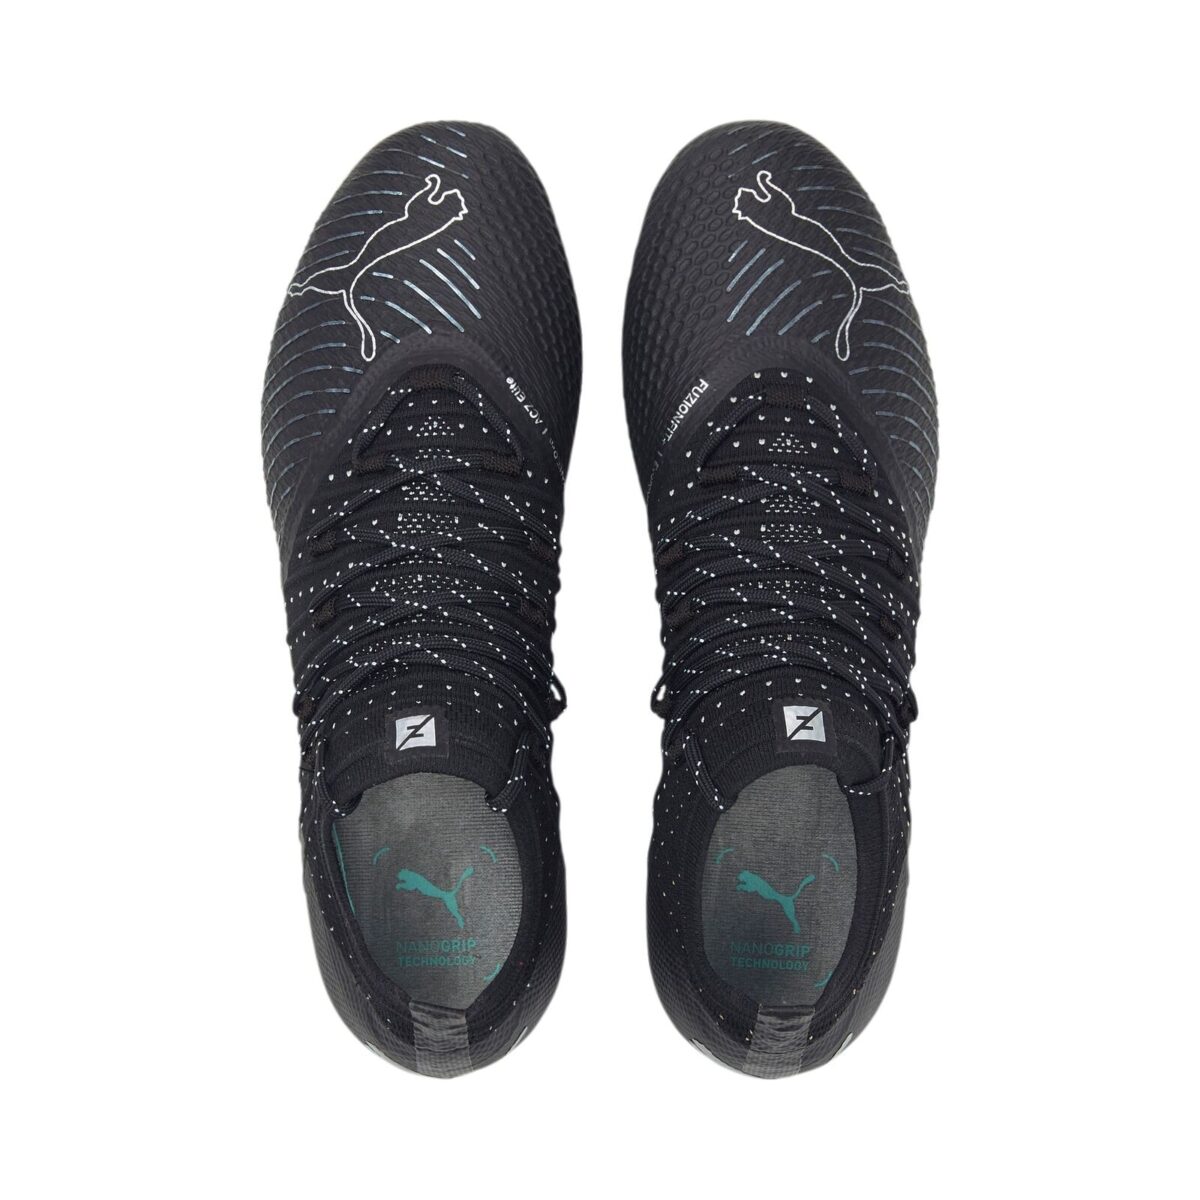 נעלי כדורגל פומה שחור/לבן Puma Future Z 1.4 FG/AG שחורות מקצועיות